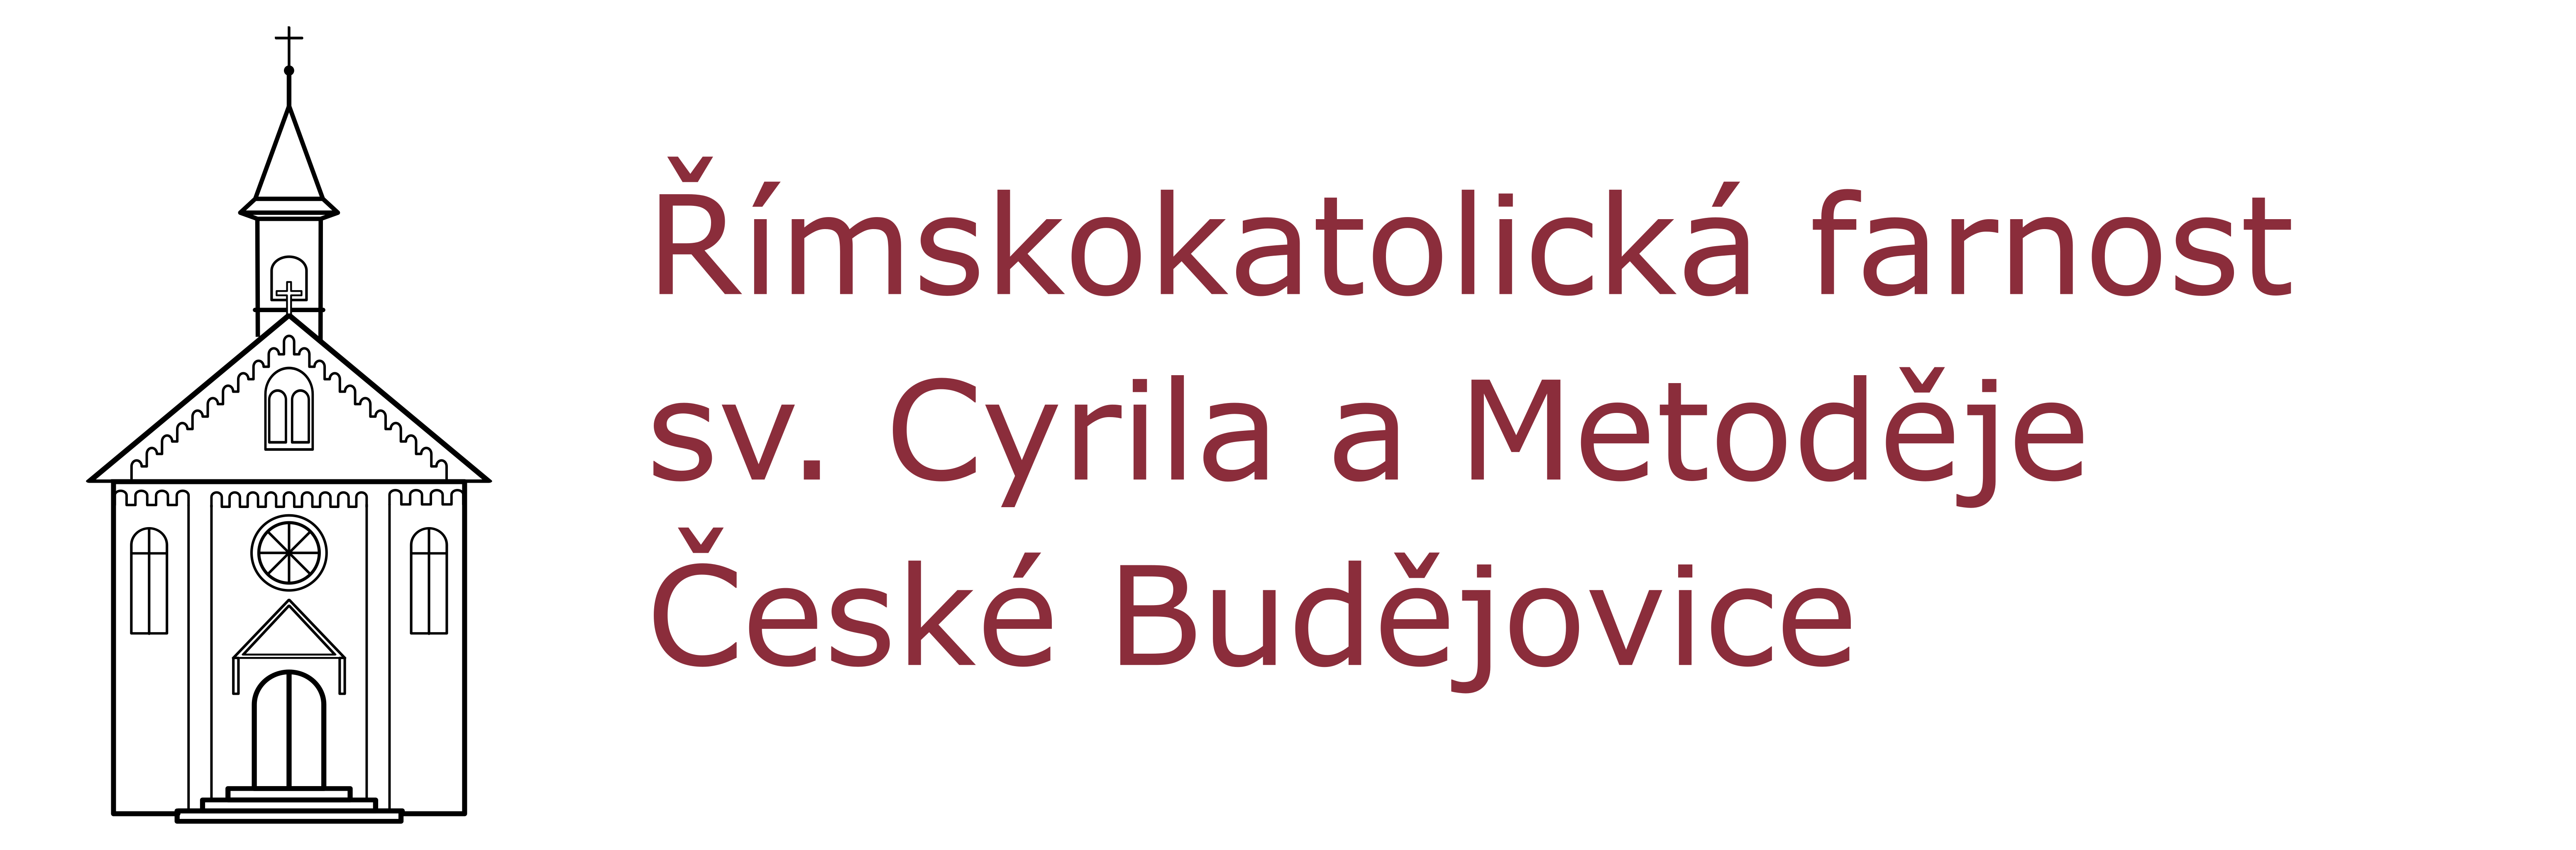 Logo Opravy - Římskokatolická farnost sv. Cyrila a Metoděje České Budějovice - Suché Vrbné